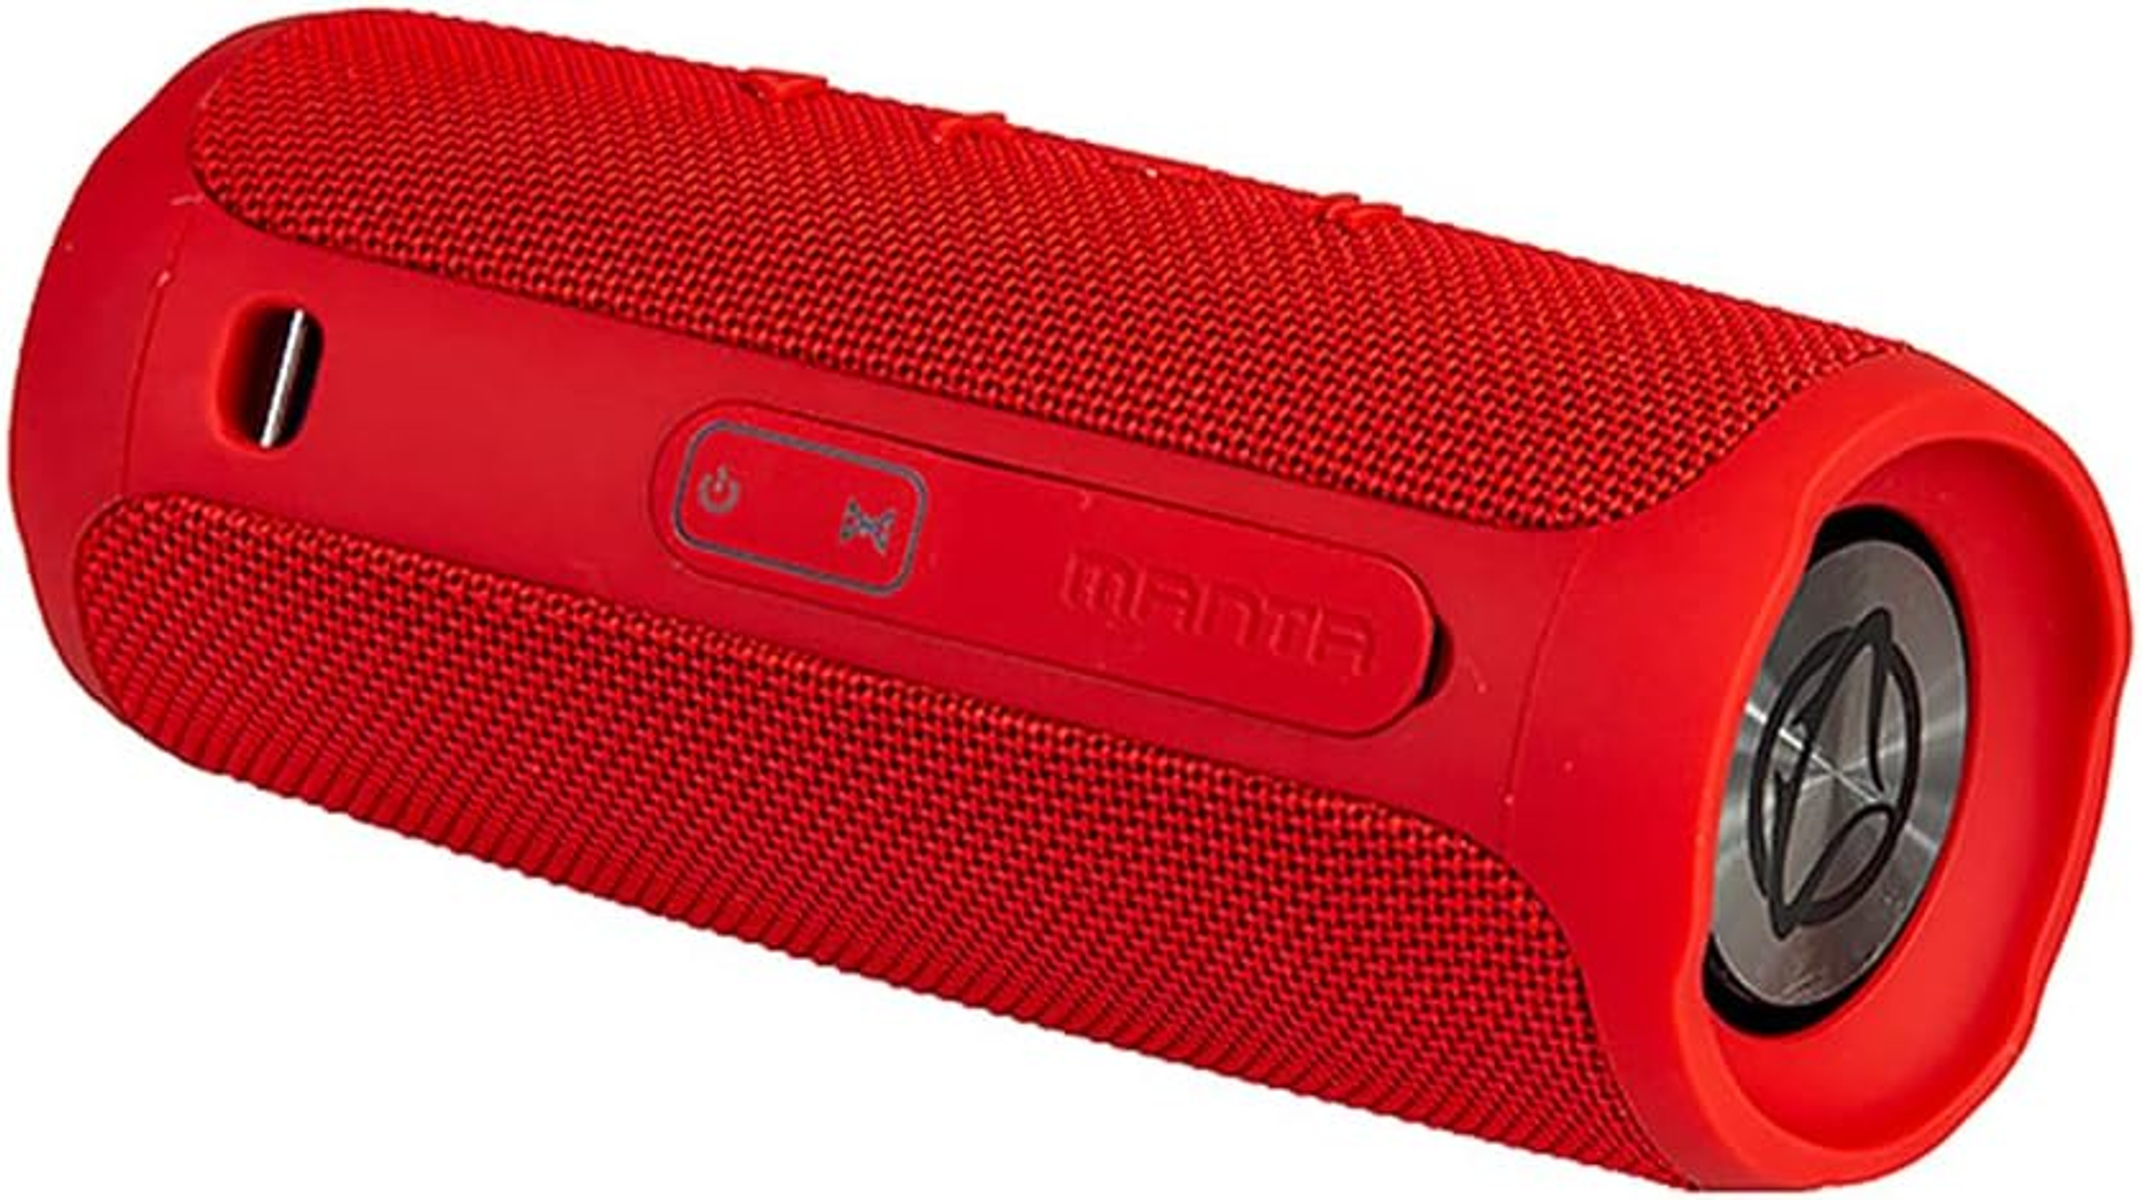 MANTA SPK130 Bluetooth Lautsprecher, Rot